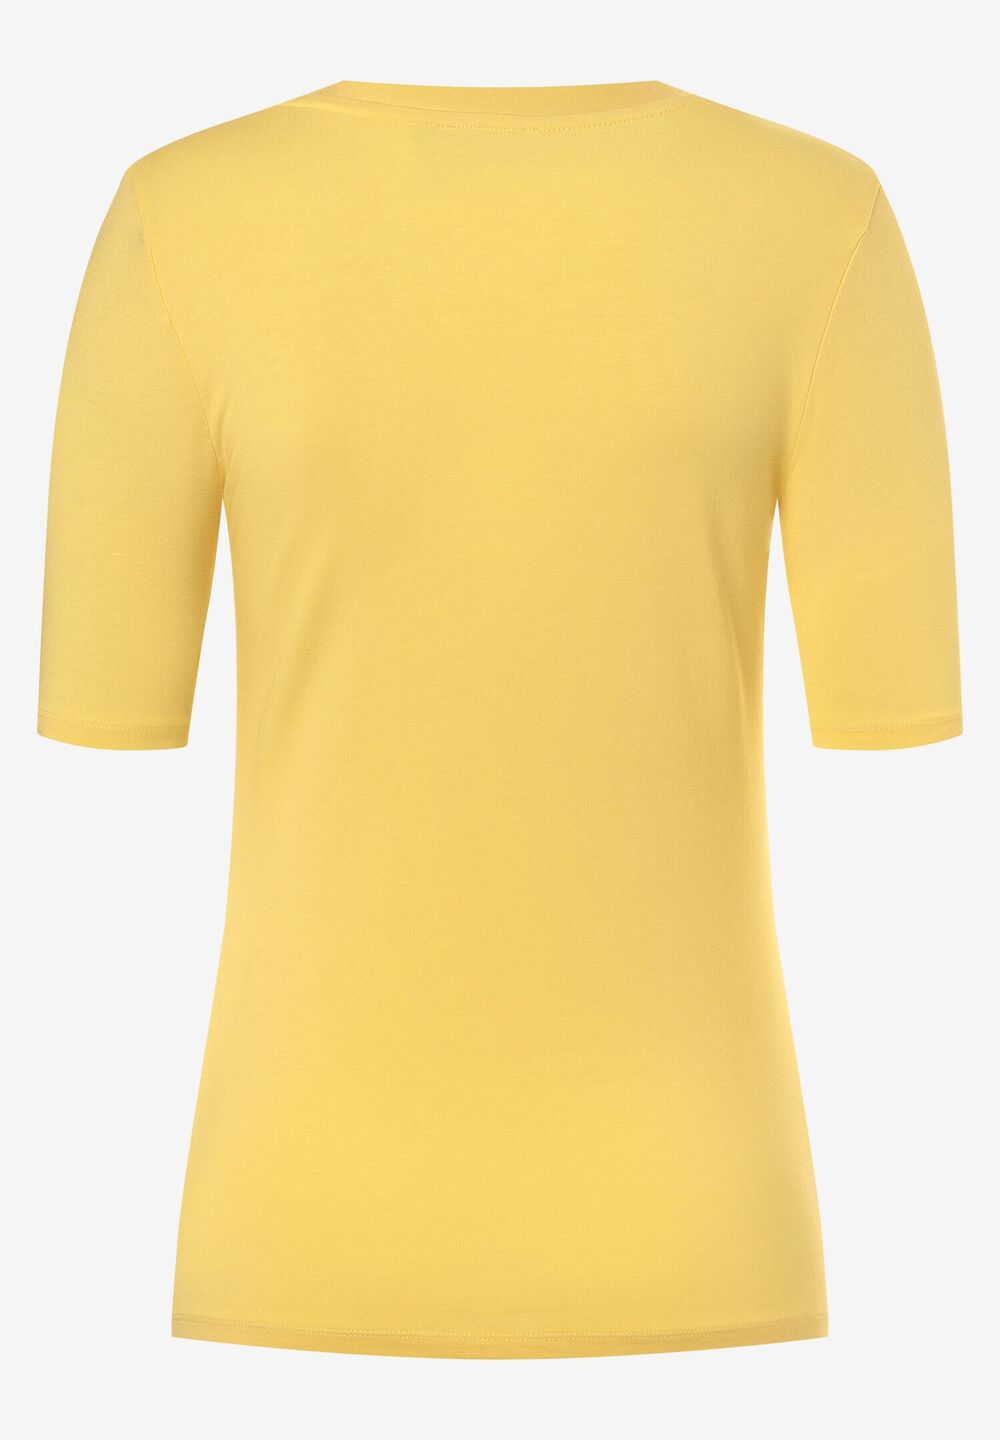 T-Shirt, daisy yellow, Frühjahrs-Kollektion, gelbRückansicht